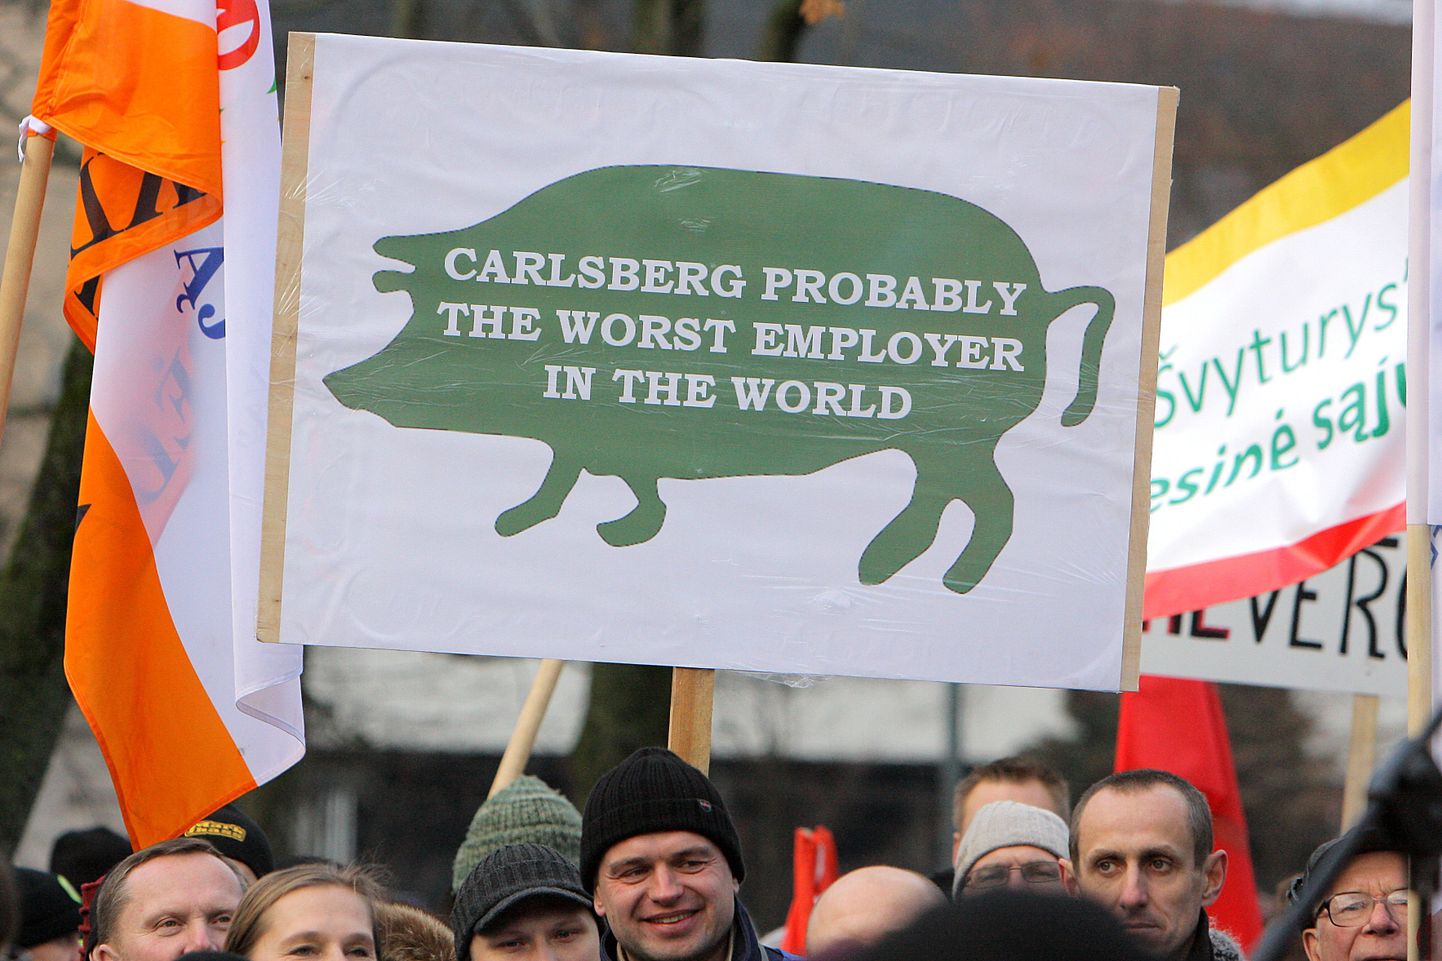 Carlsbergile kuuluva Svyturys-Utenose õlletehase ametiühingu liikmed ettevõtte personalipoliitika vastu protestimas.